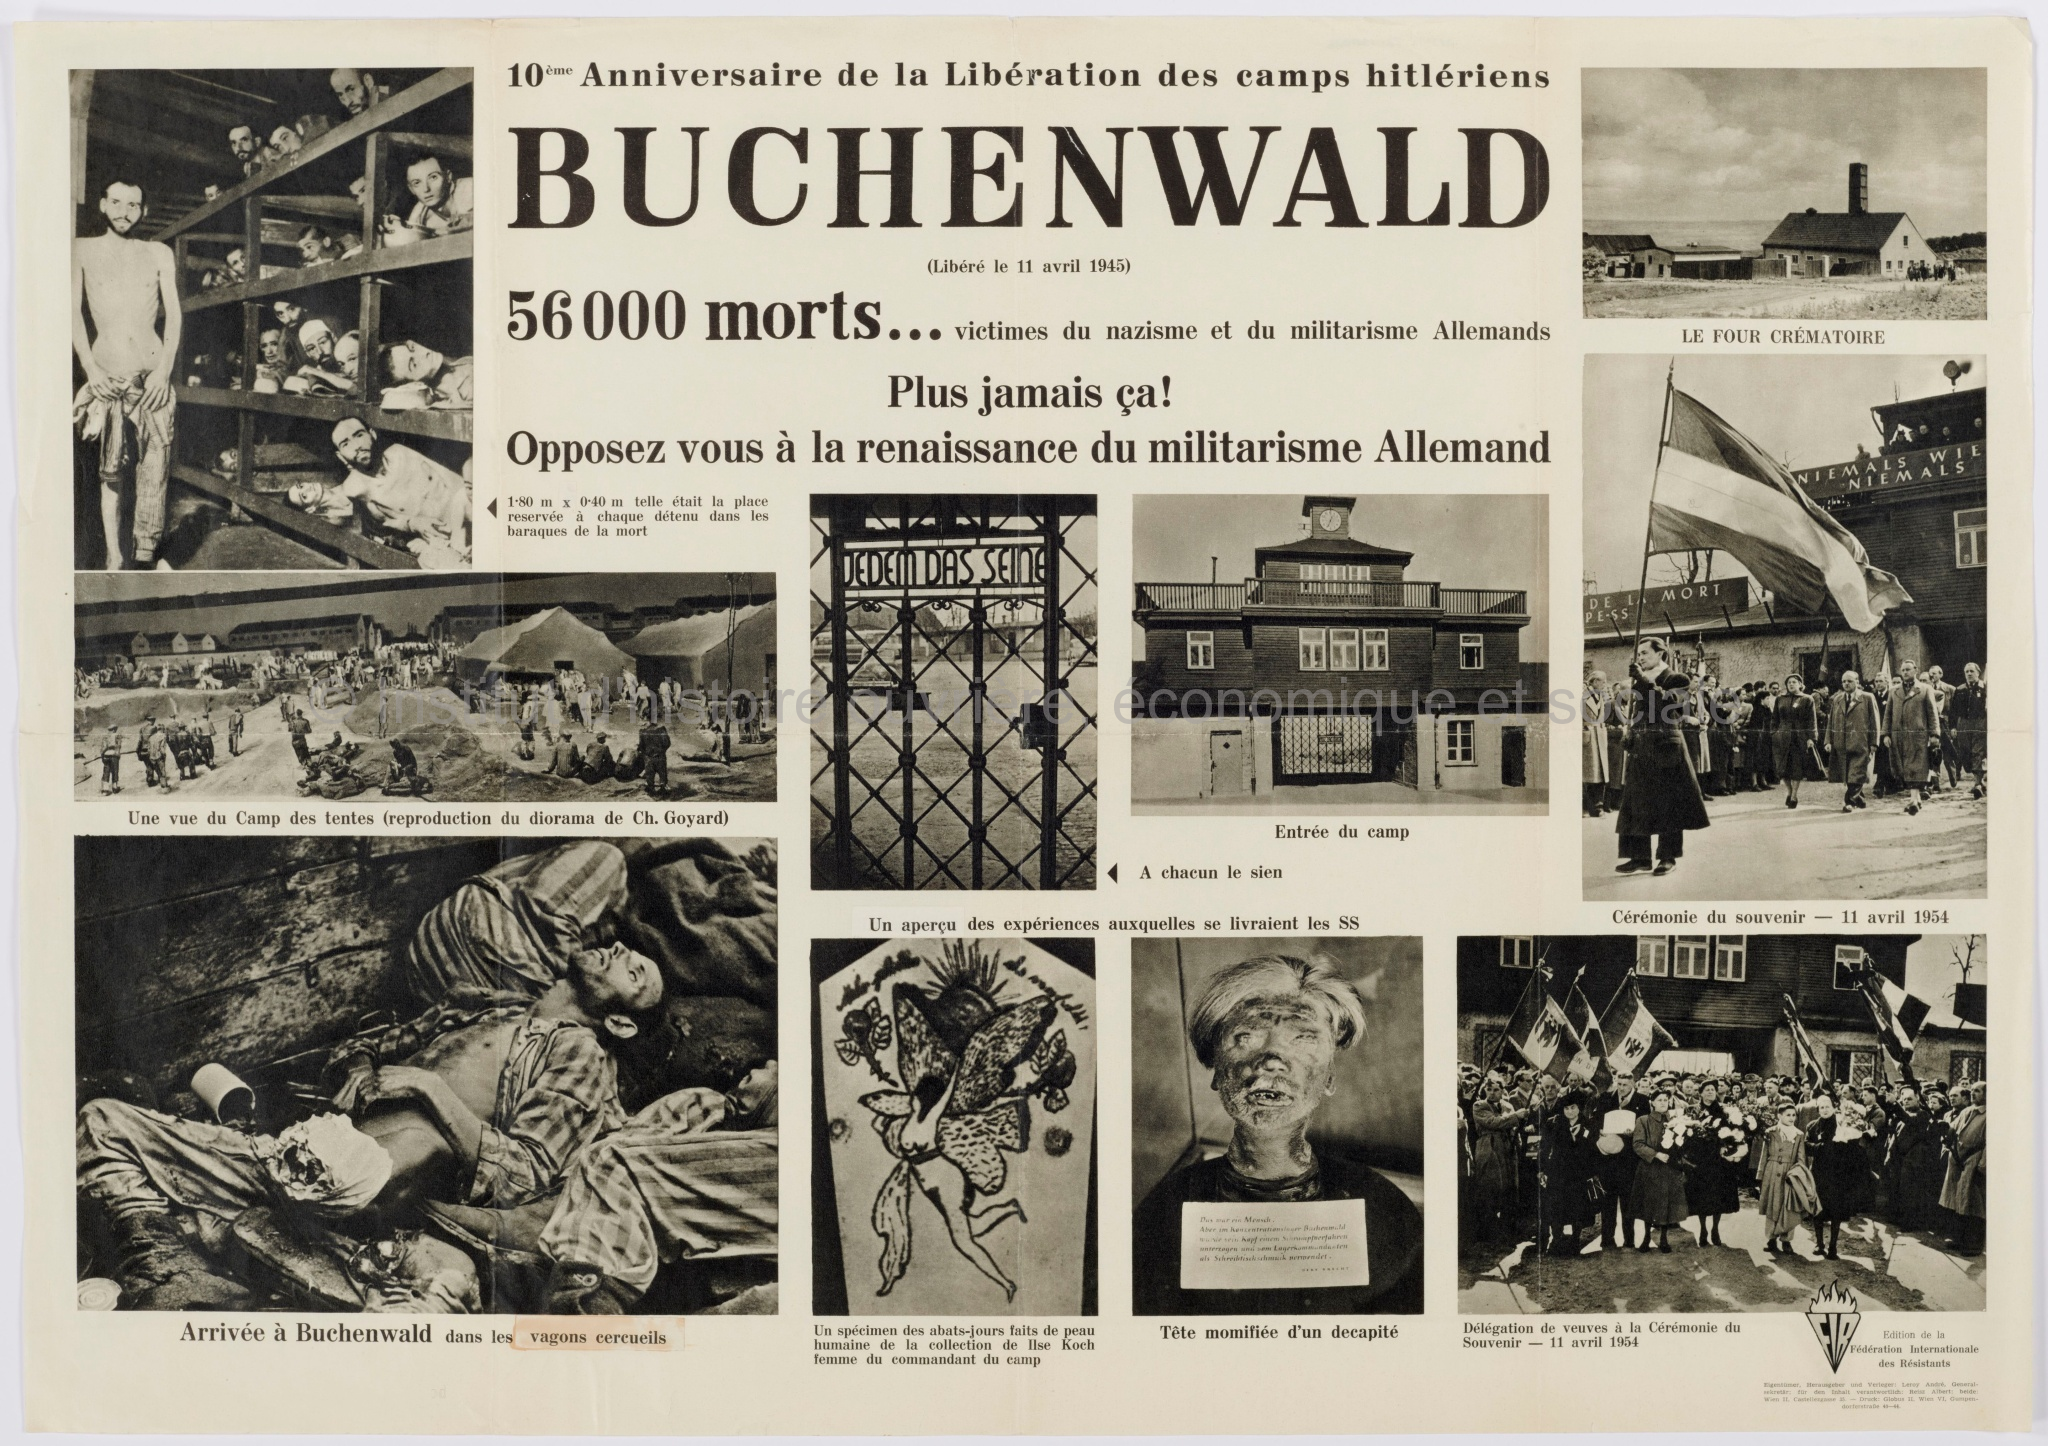 10ème anniversaire de la libération des camps hitlériens : Buchenwald (libéré le 11 avril 1945)